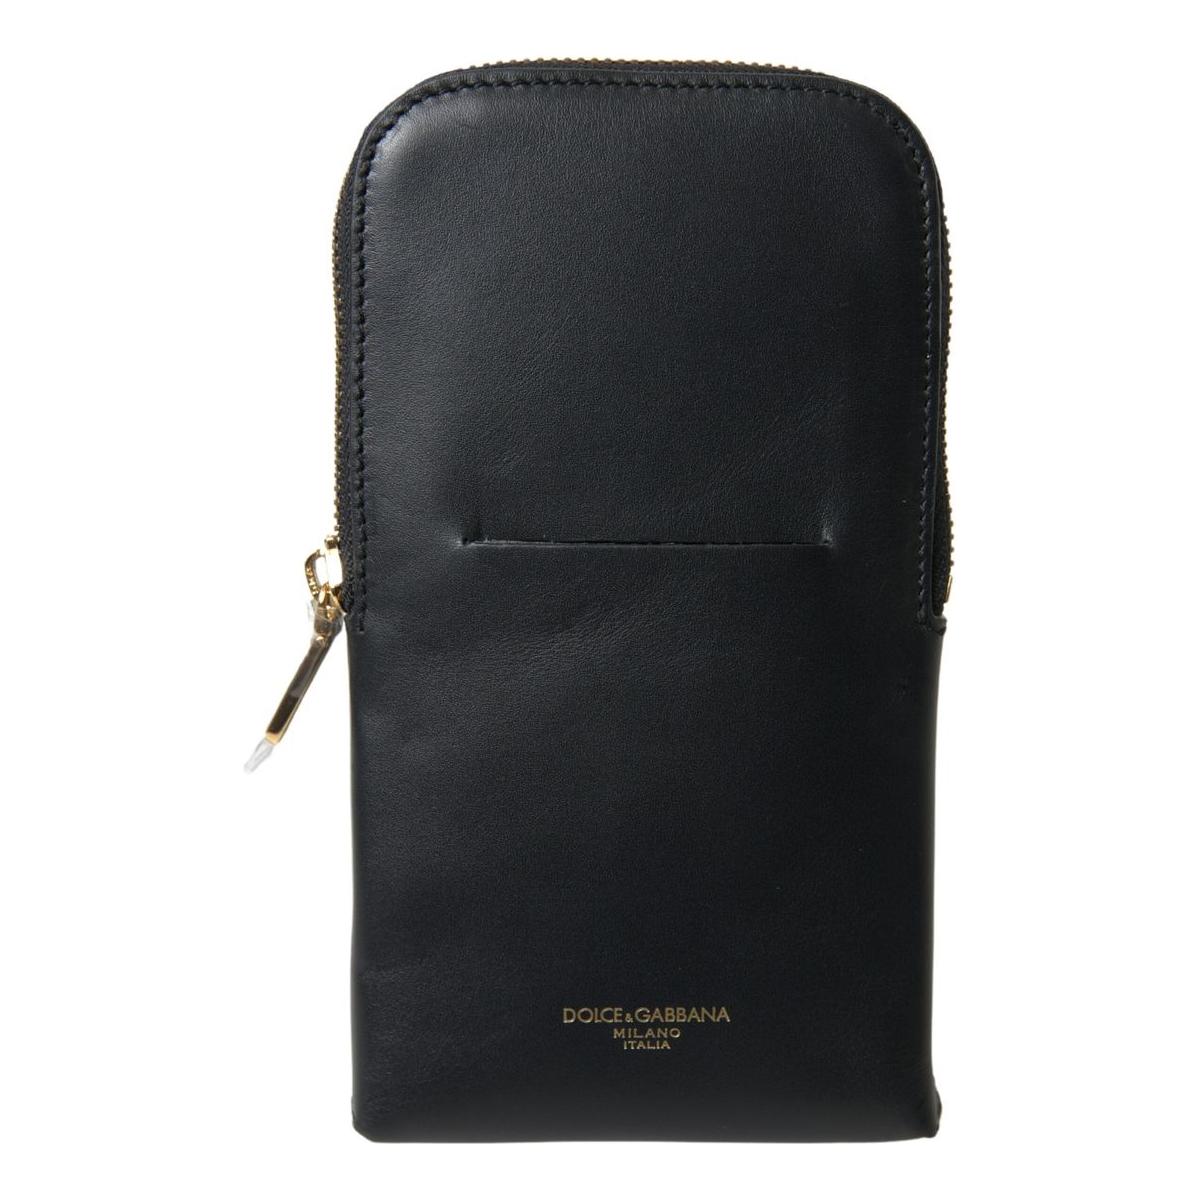 Dolce & Gabbana Elegant Leather Wristlet Clutch black-leather-men-purse-double-belt-strap-bracelet-bag 465A4754-scaled-4802eec6-3f6.jpg